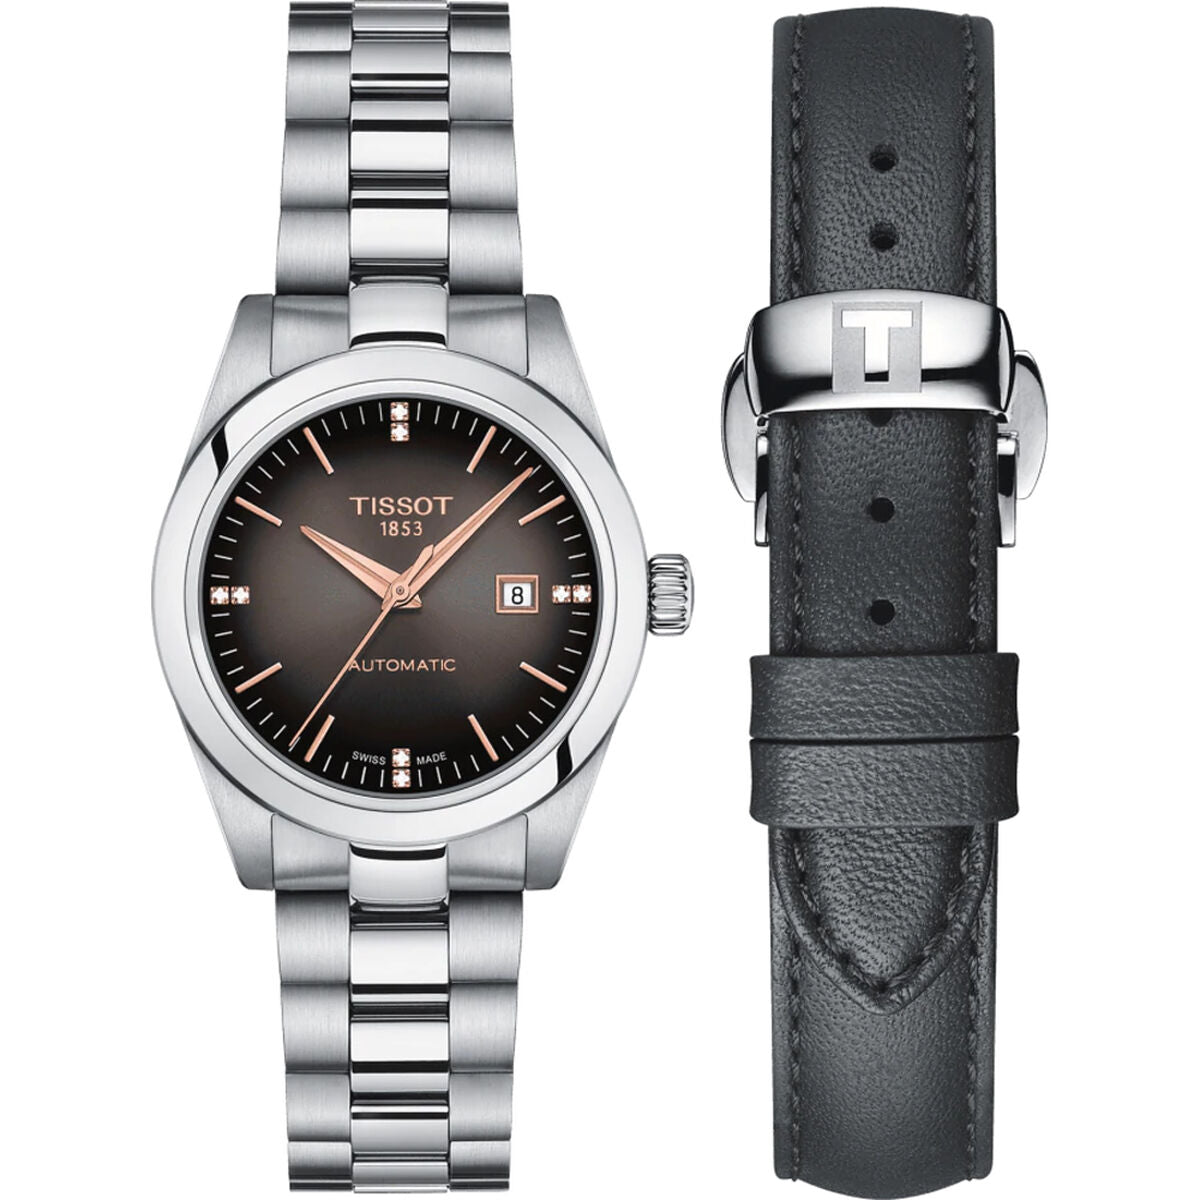 Kaufe Tissot T-MY LADY AUTOMATIC W-DIAMONDS Schwarz Silberfarben Uhr bei AWK Flagship um € 651.00